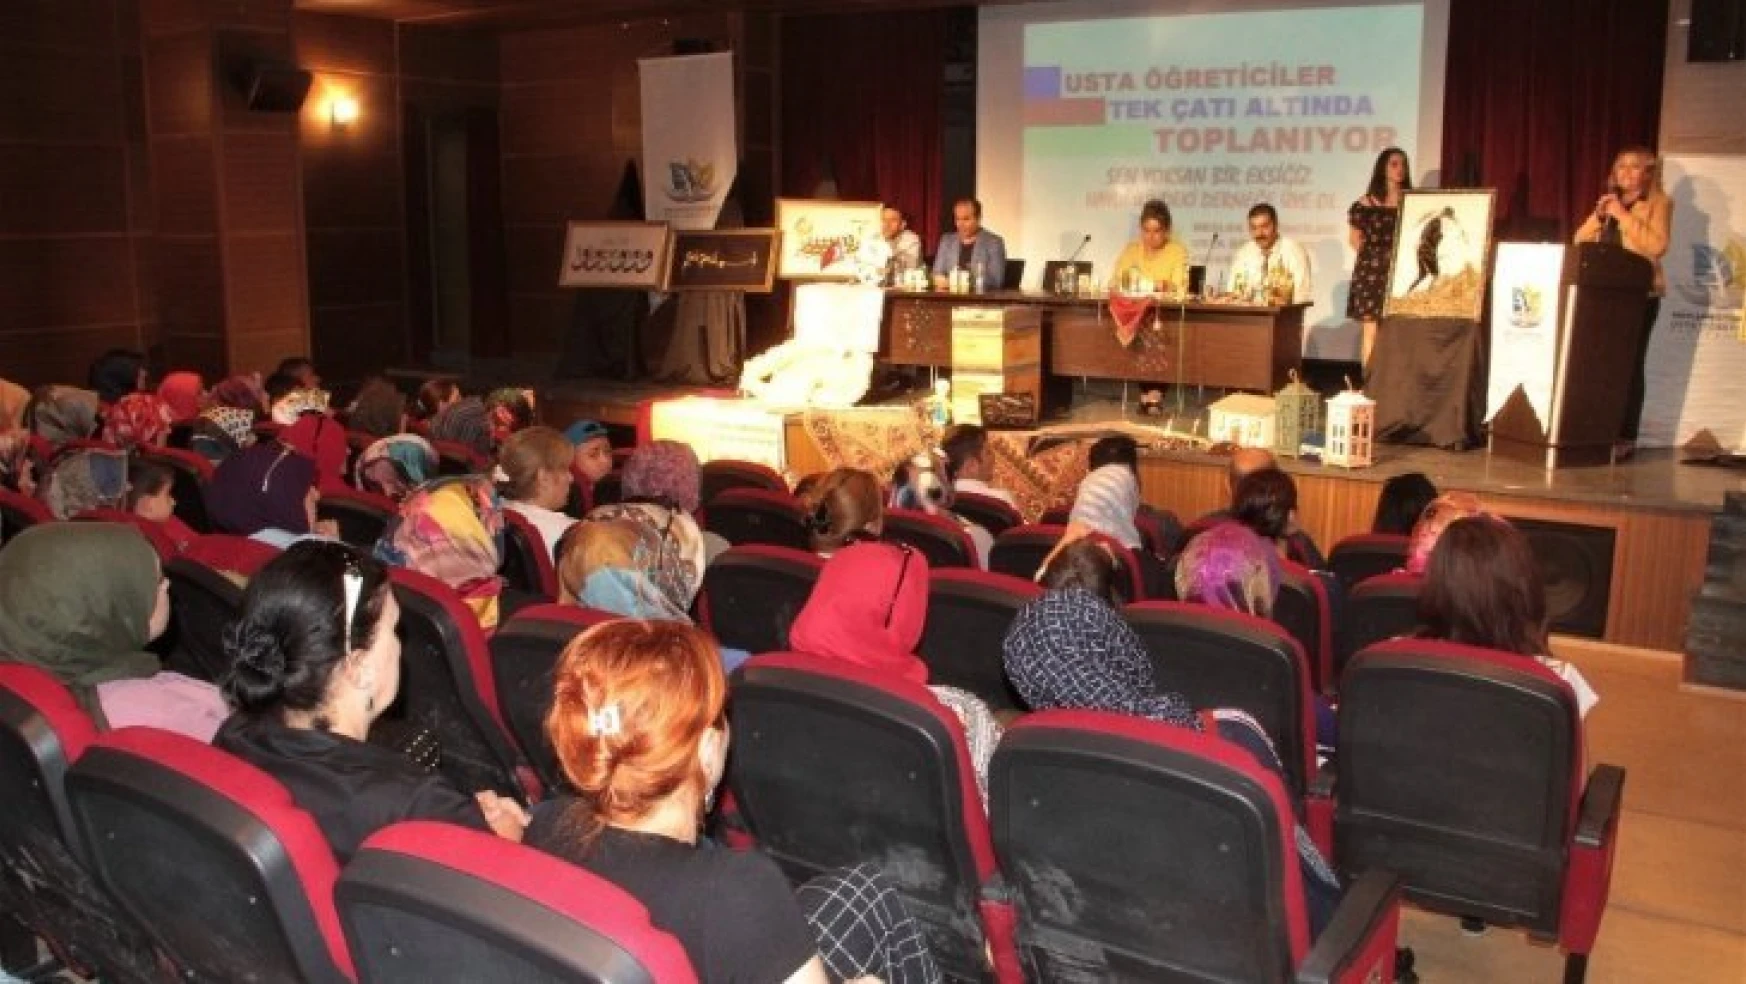 Elazığ'da 'Usta Öğreticiler tek çatı altında toplanıyor' semineri